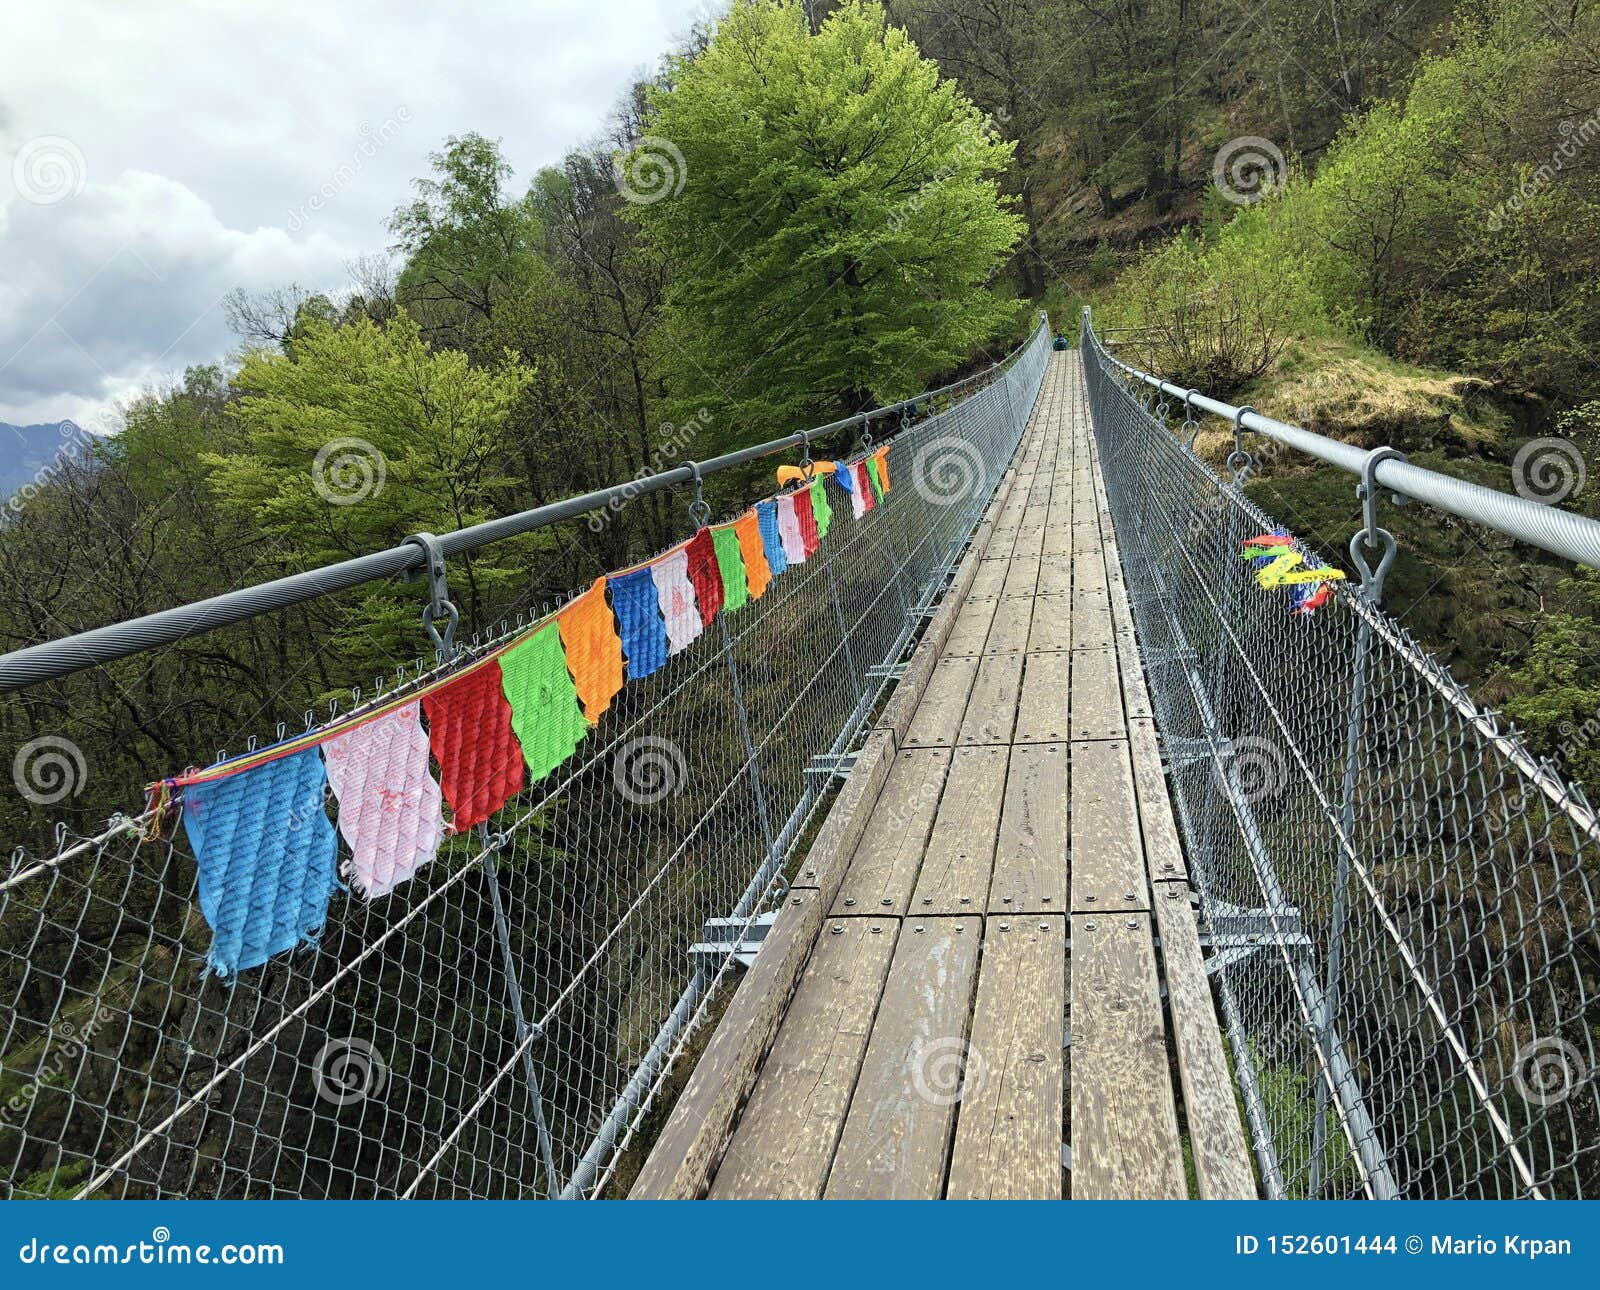 tibetan bridge carasc or ponte tibetano valle di sementina or tibetische brucke carasc, monte carasso